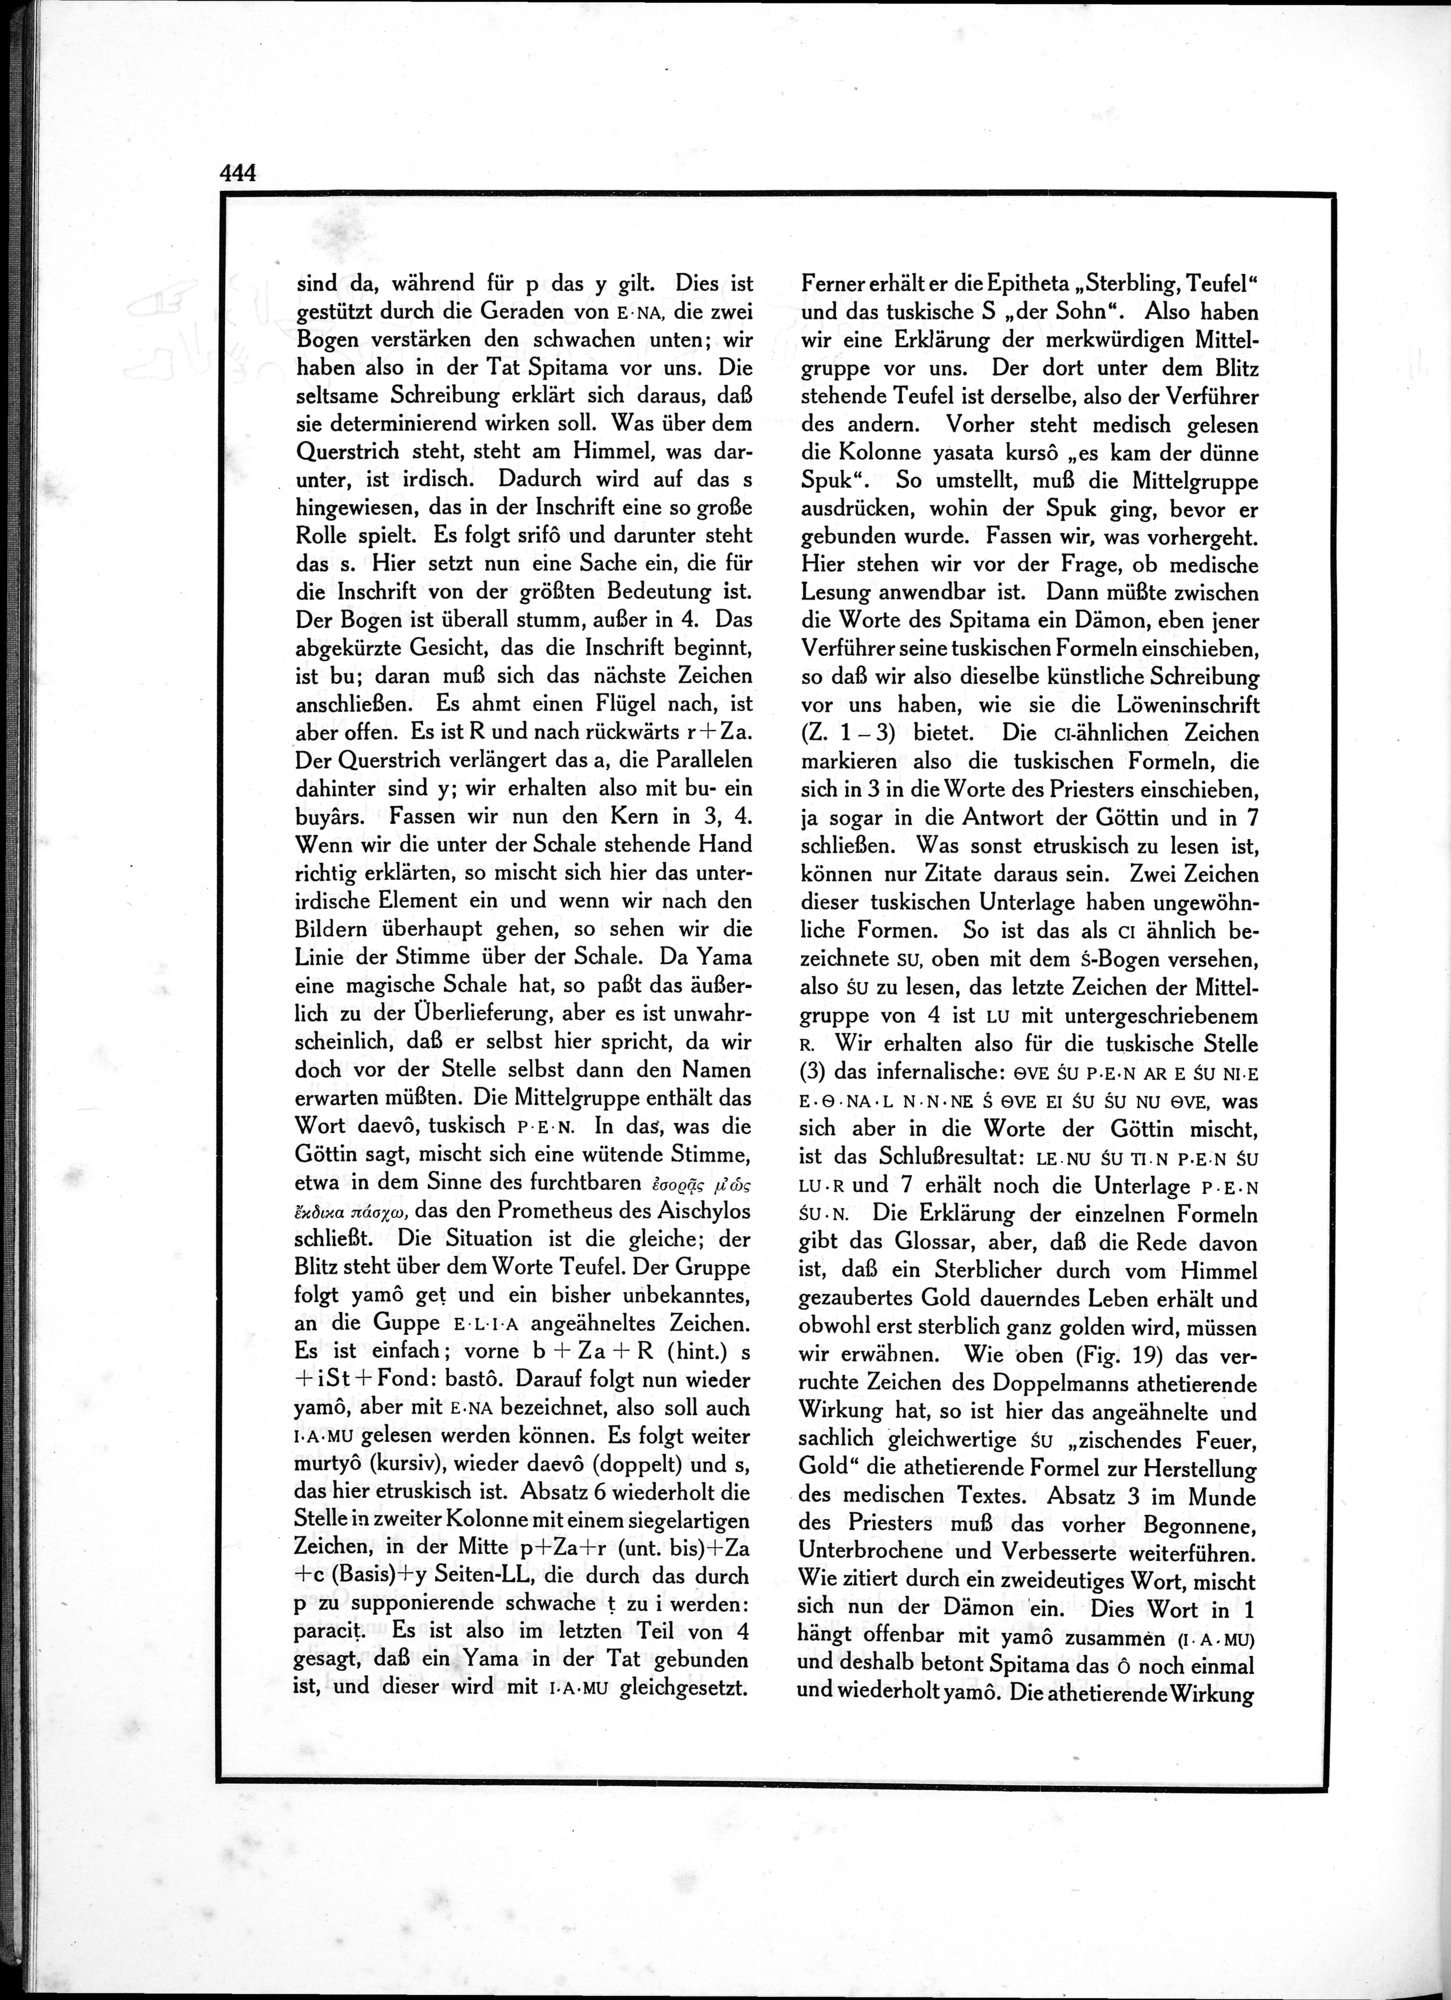 Die Teufel des Avesta und Ihre Beziehungen zur Ikonographie des Buddhismus Zentral-Asiens : vol.1 / Page 448 (Grayscale High Resolution Image)